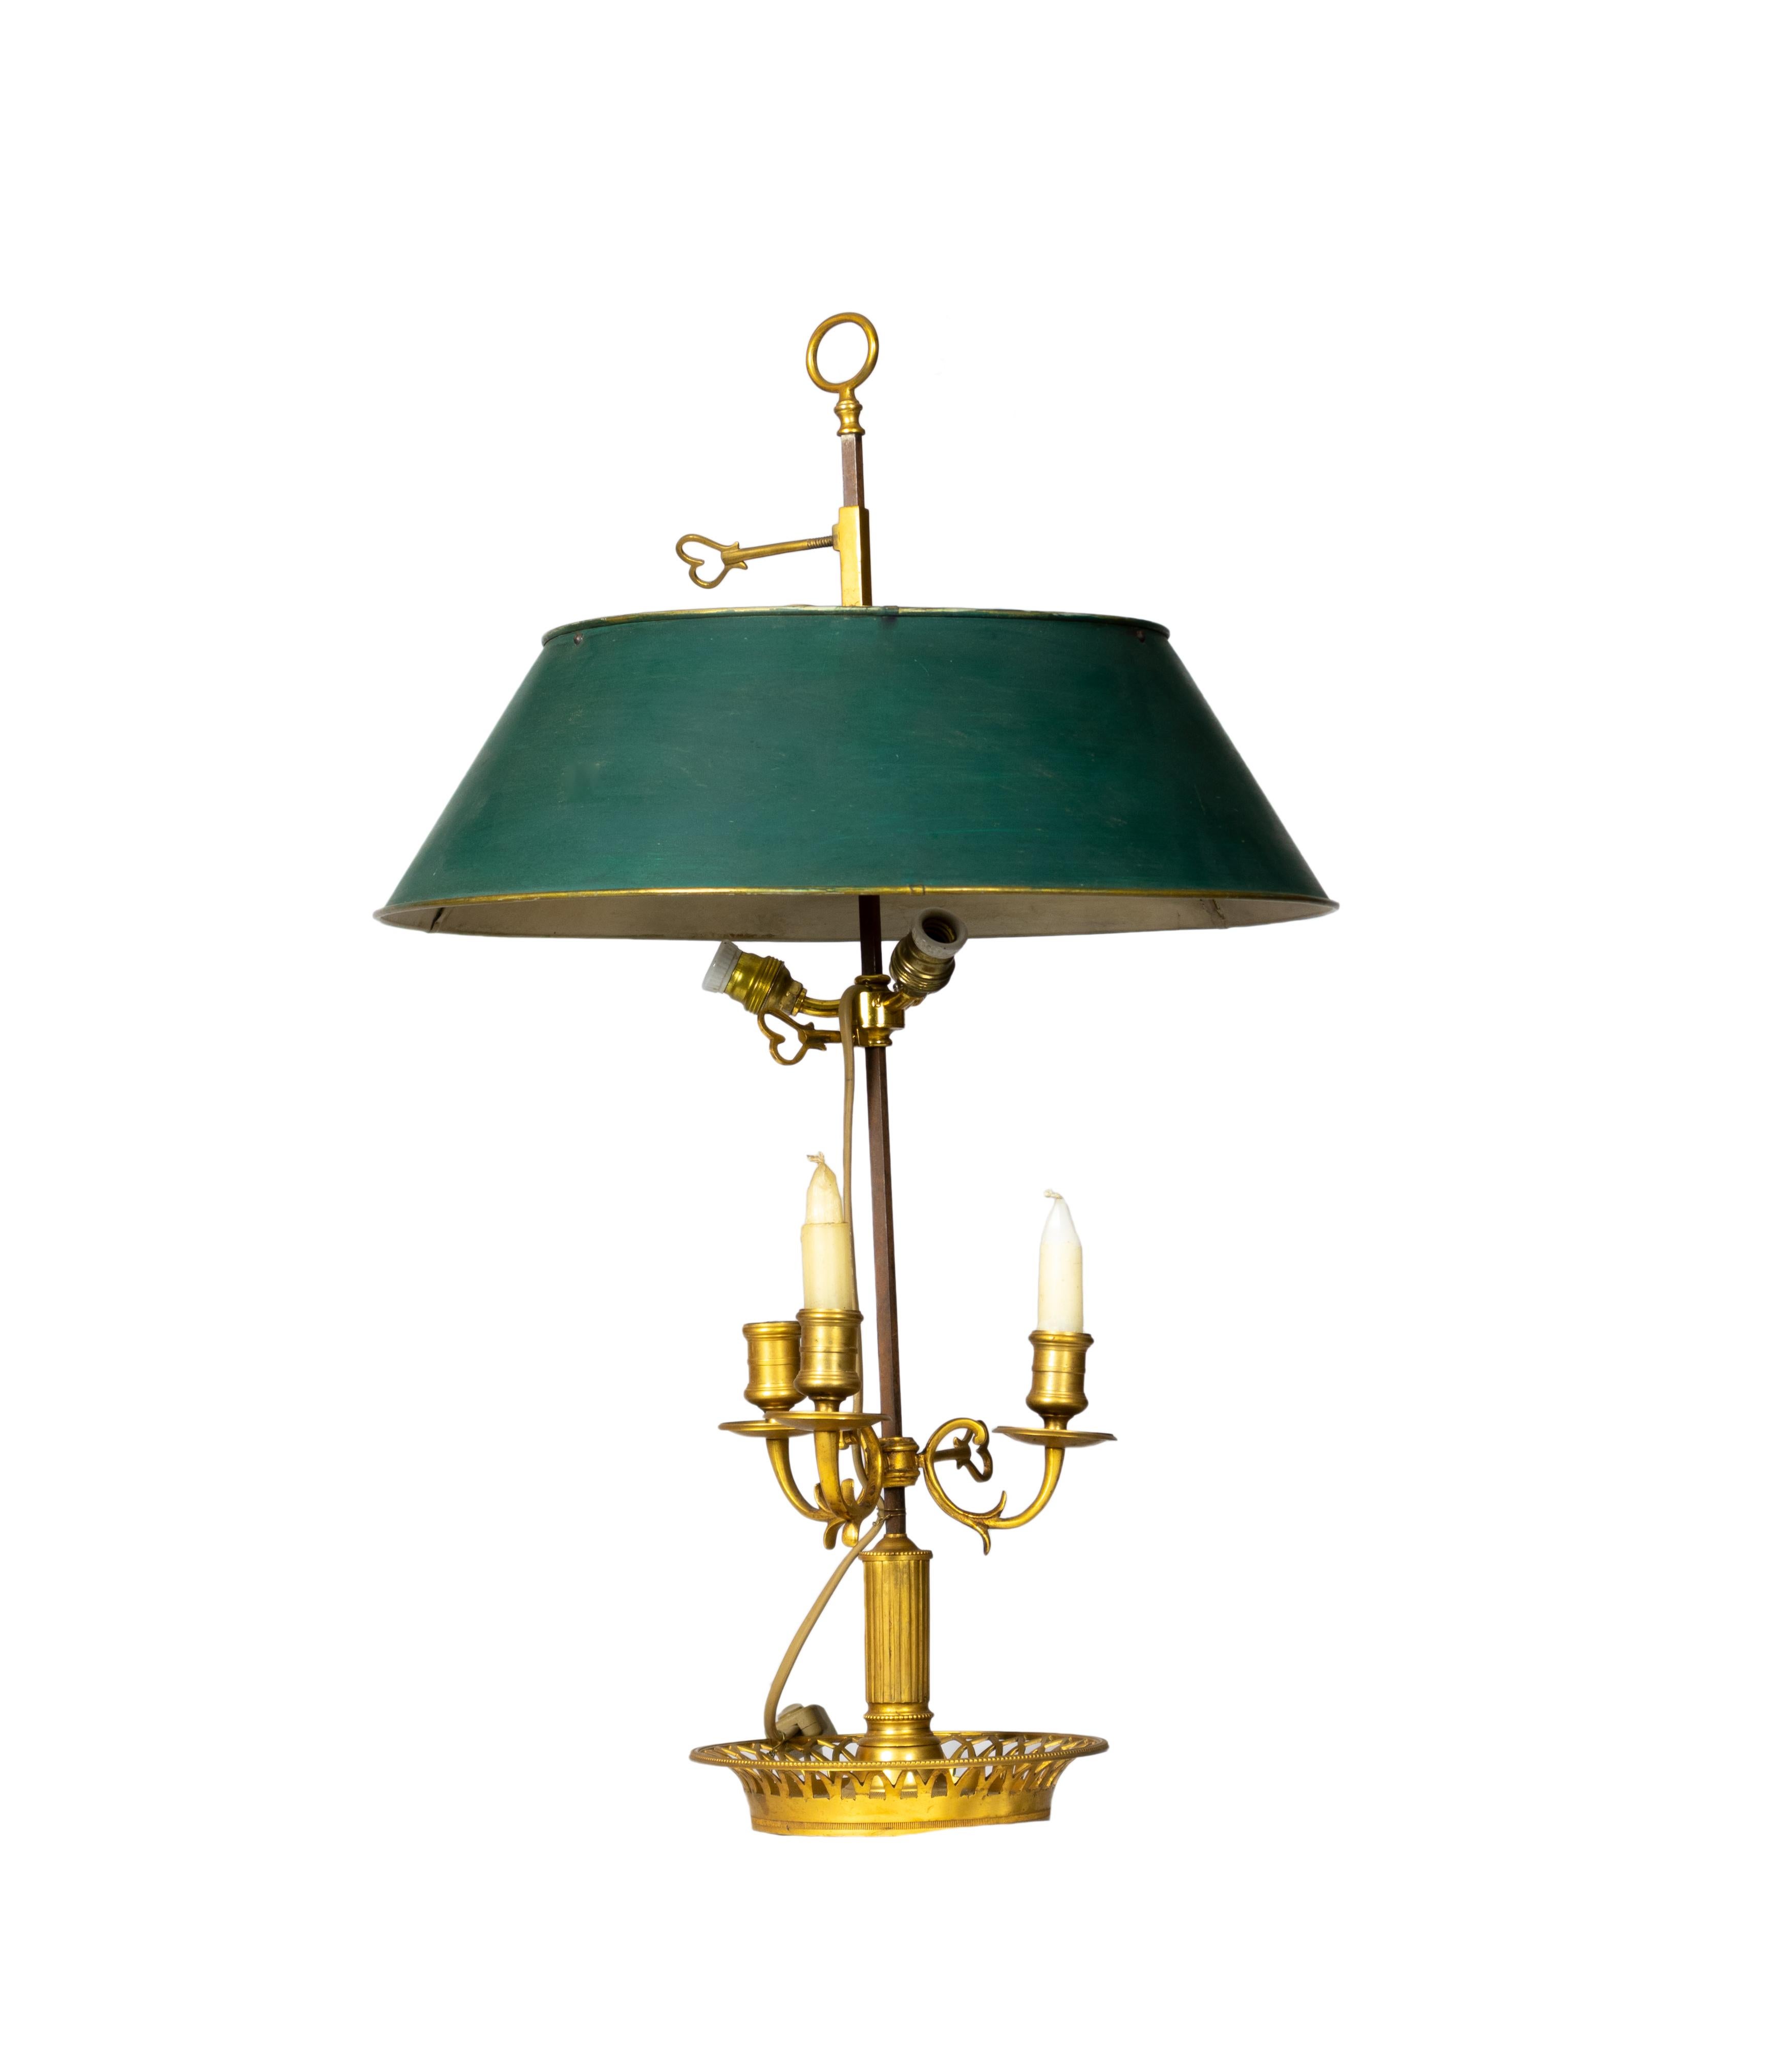 Une lampe bouillotte d'époque de style Empire français, dotée de trois lampes en bronze et d'un écran réglable, est complétée par un abat-jour en tole verdoyant dans les tons de vert.
